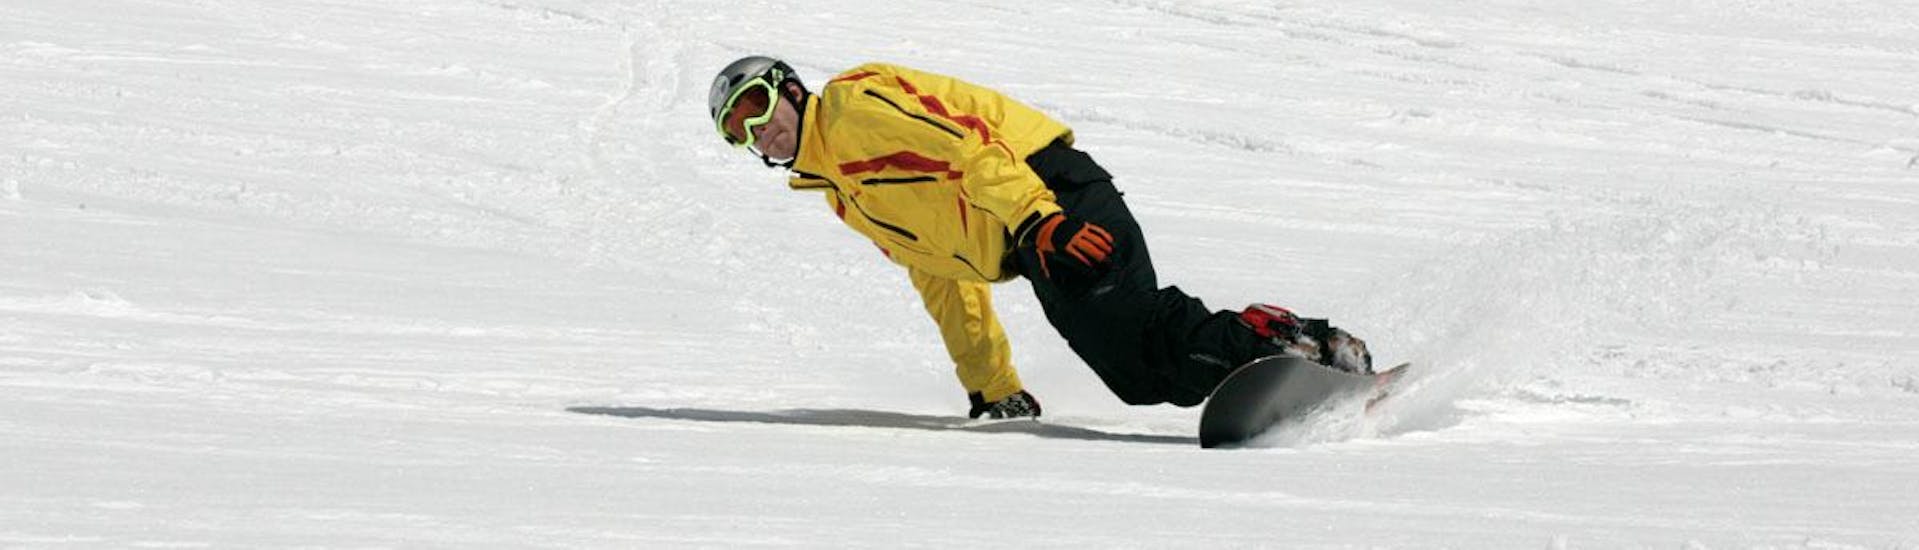 Lezioni di Snowboard principianti assoluti.